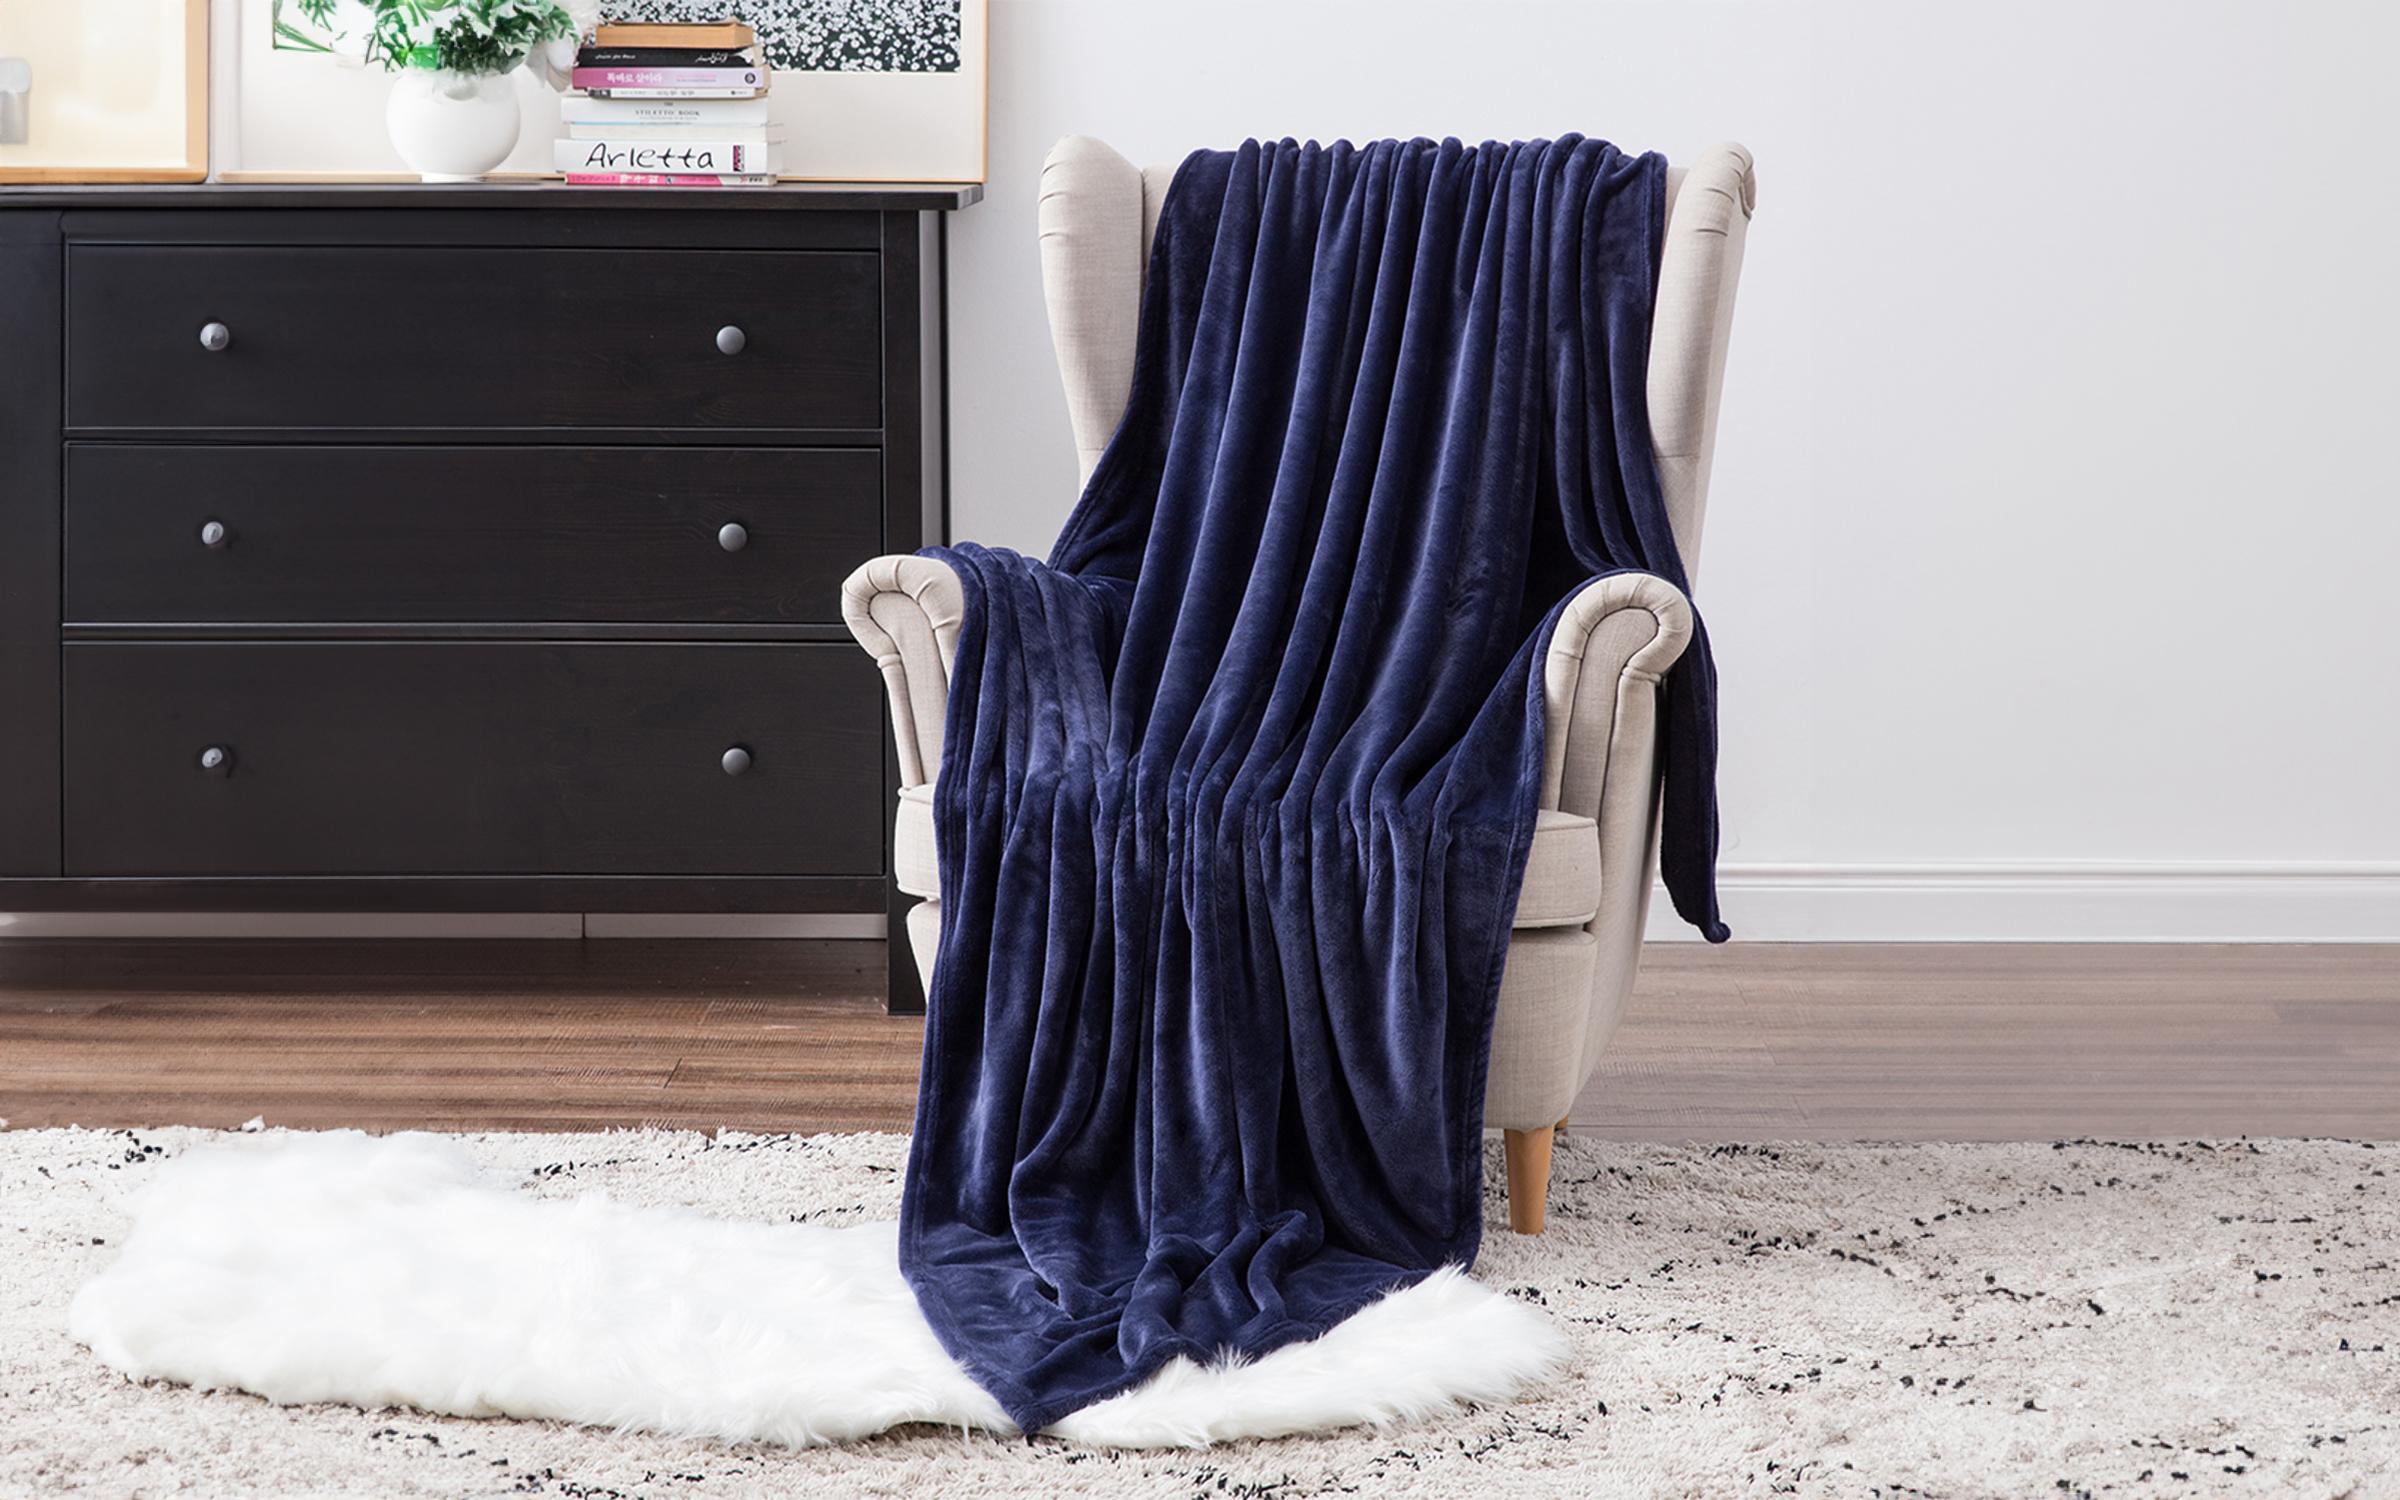 Κουβέρτα, σκούρο μπλε, 200/230 cm  1